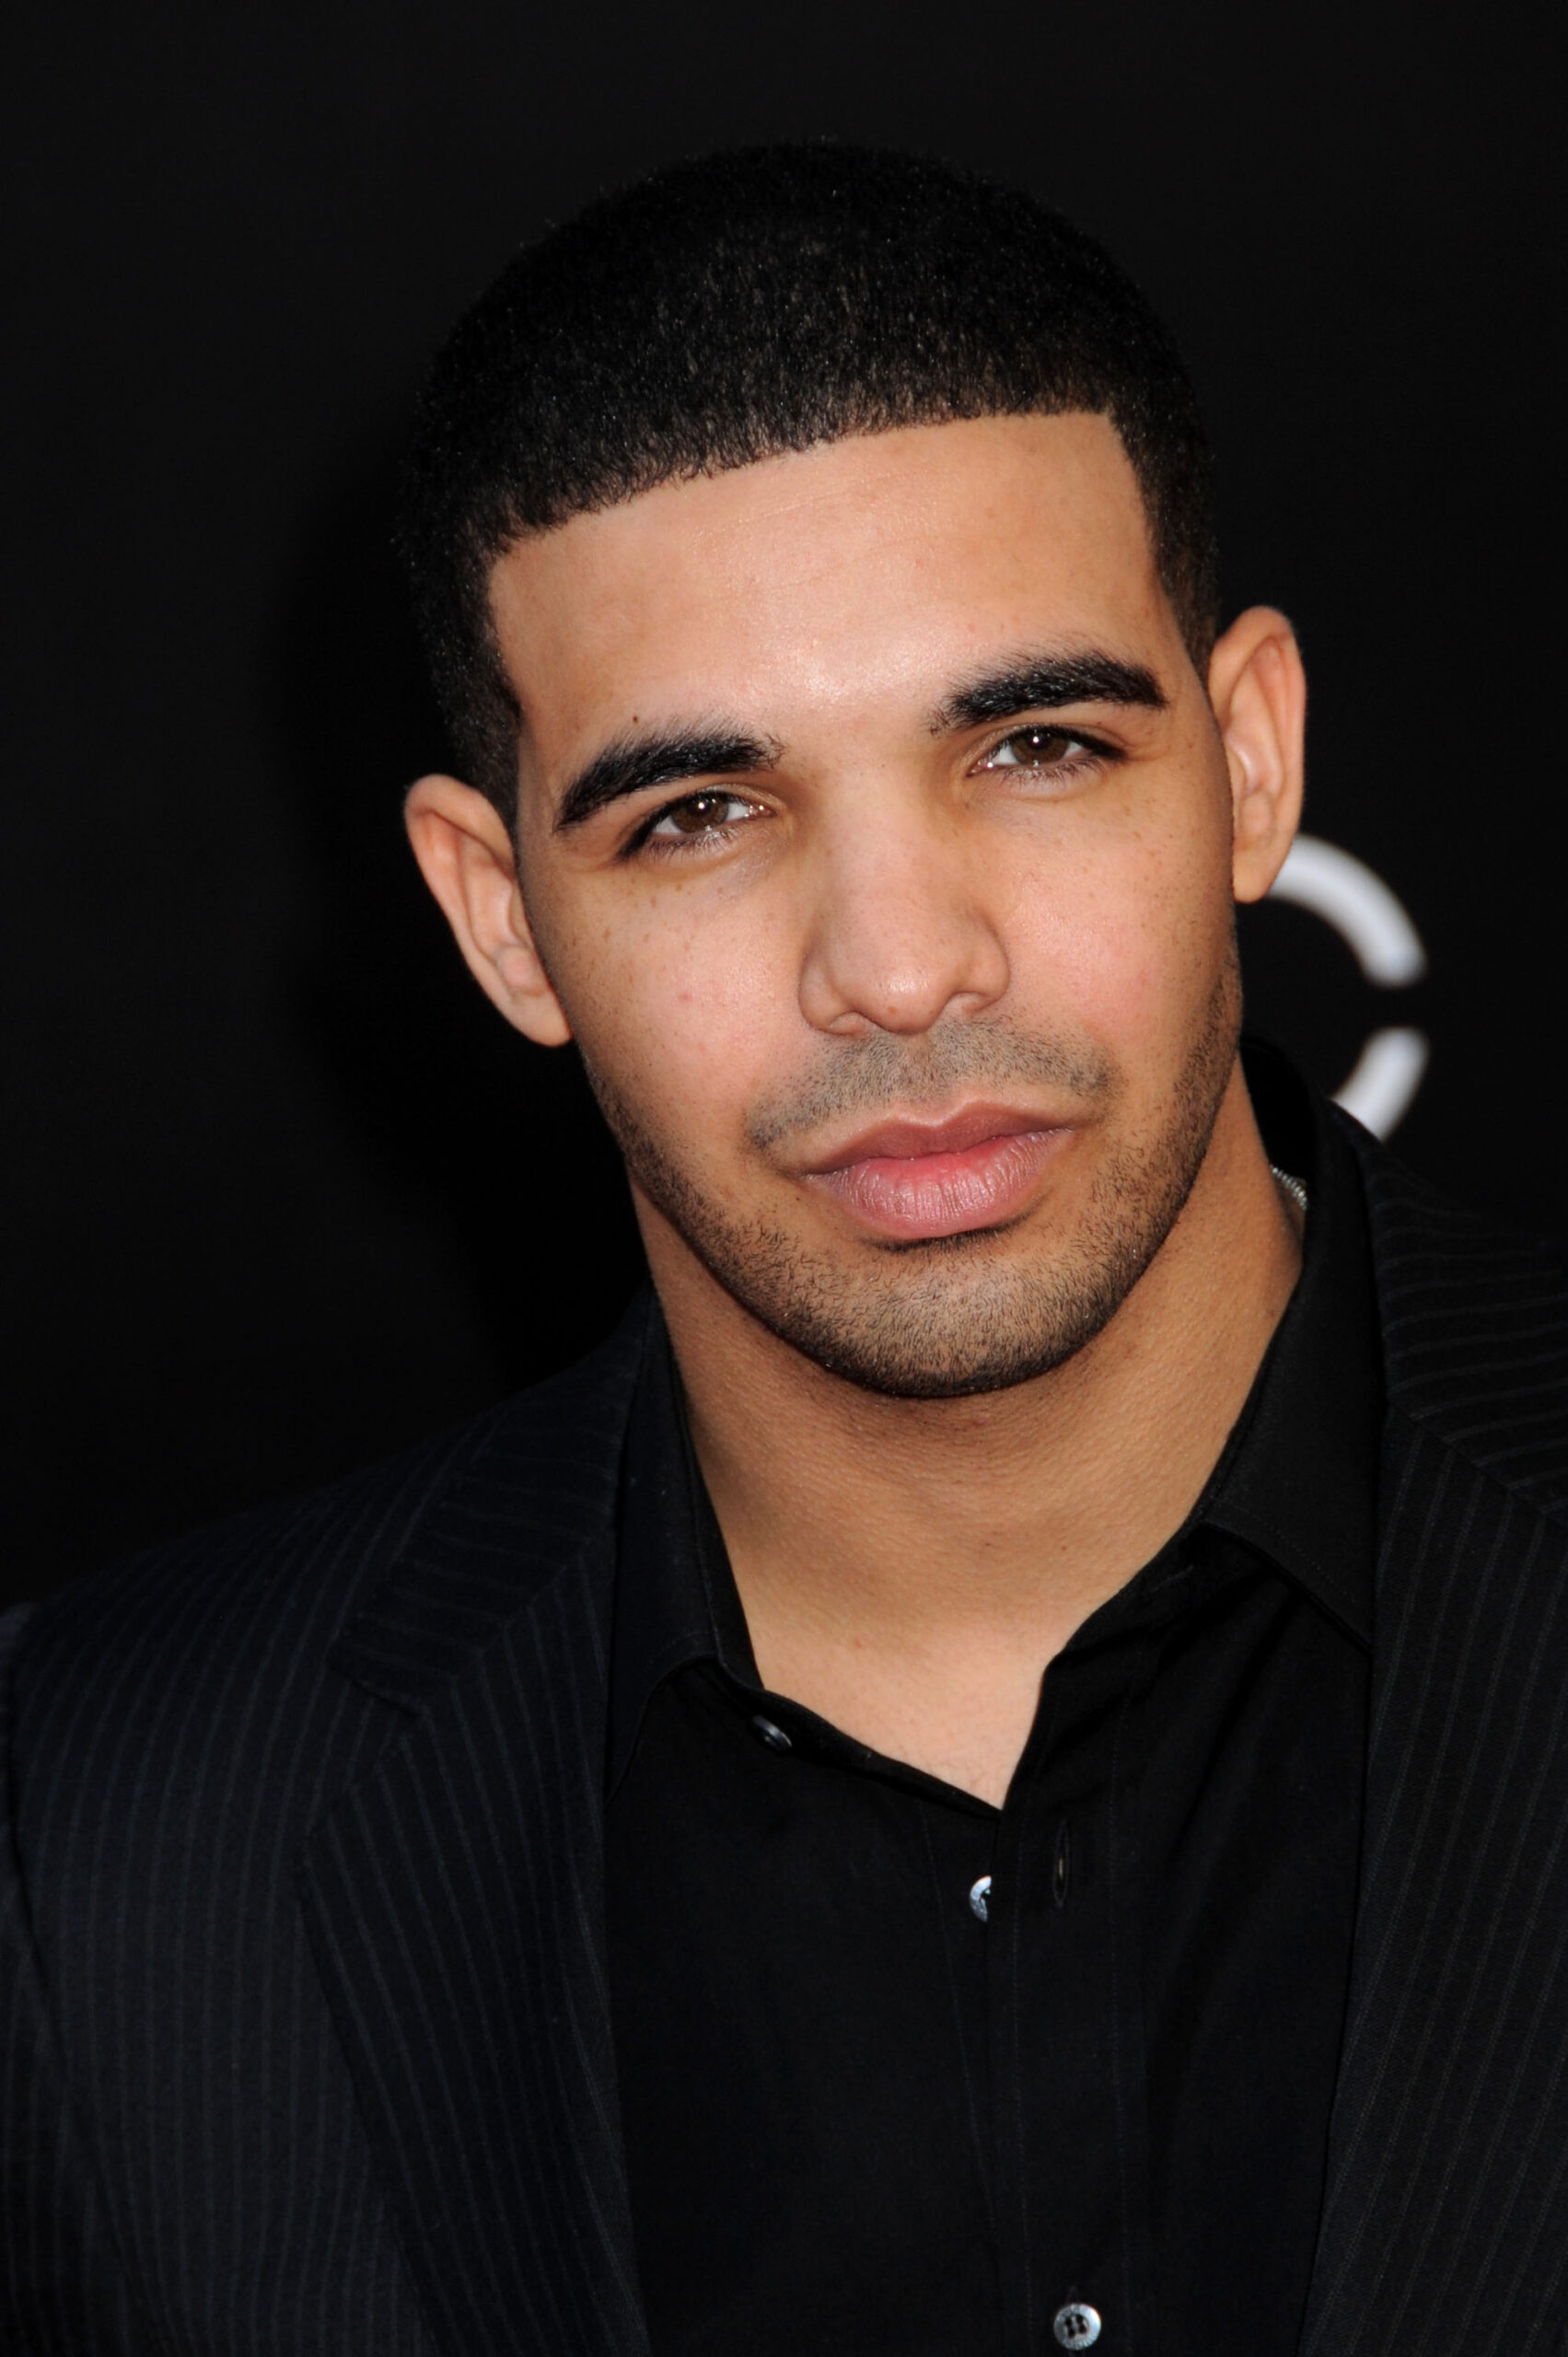 Meet the GF. Drake iubește din nou. Află cine este partenera rapperului și cum s-au cunoscut!